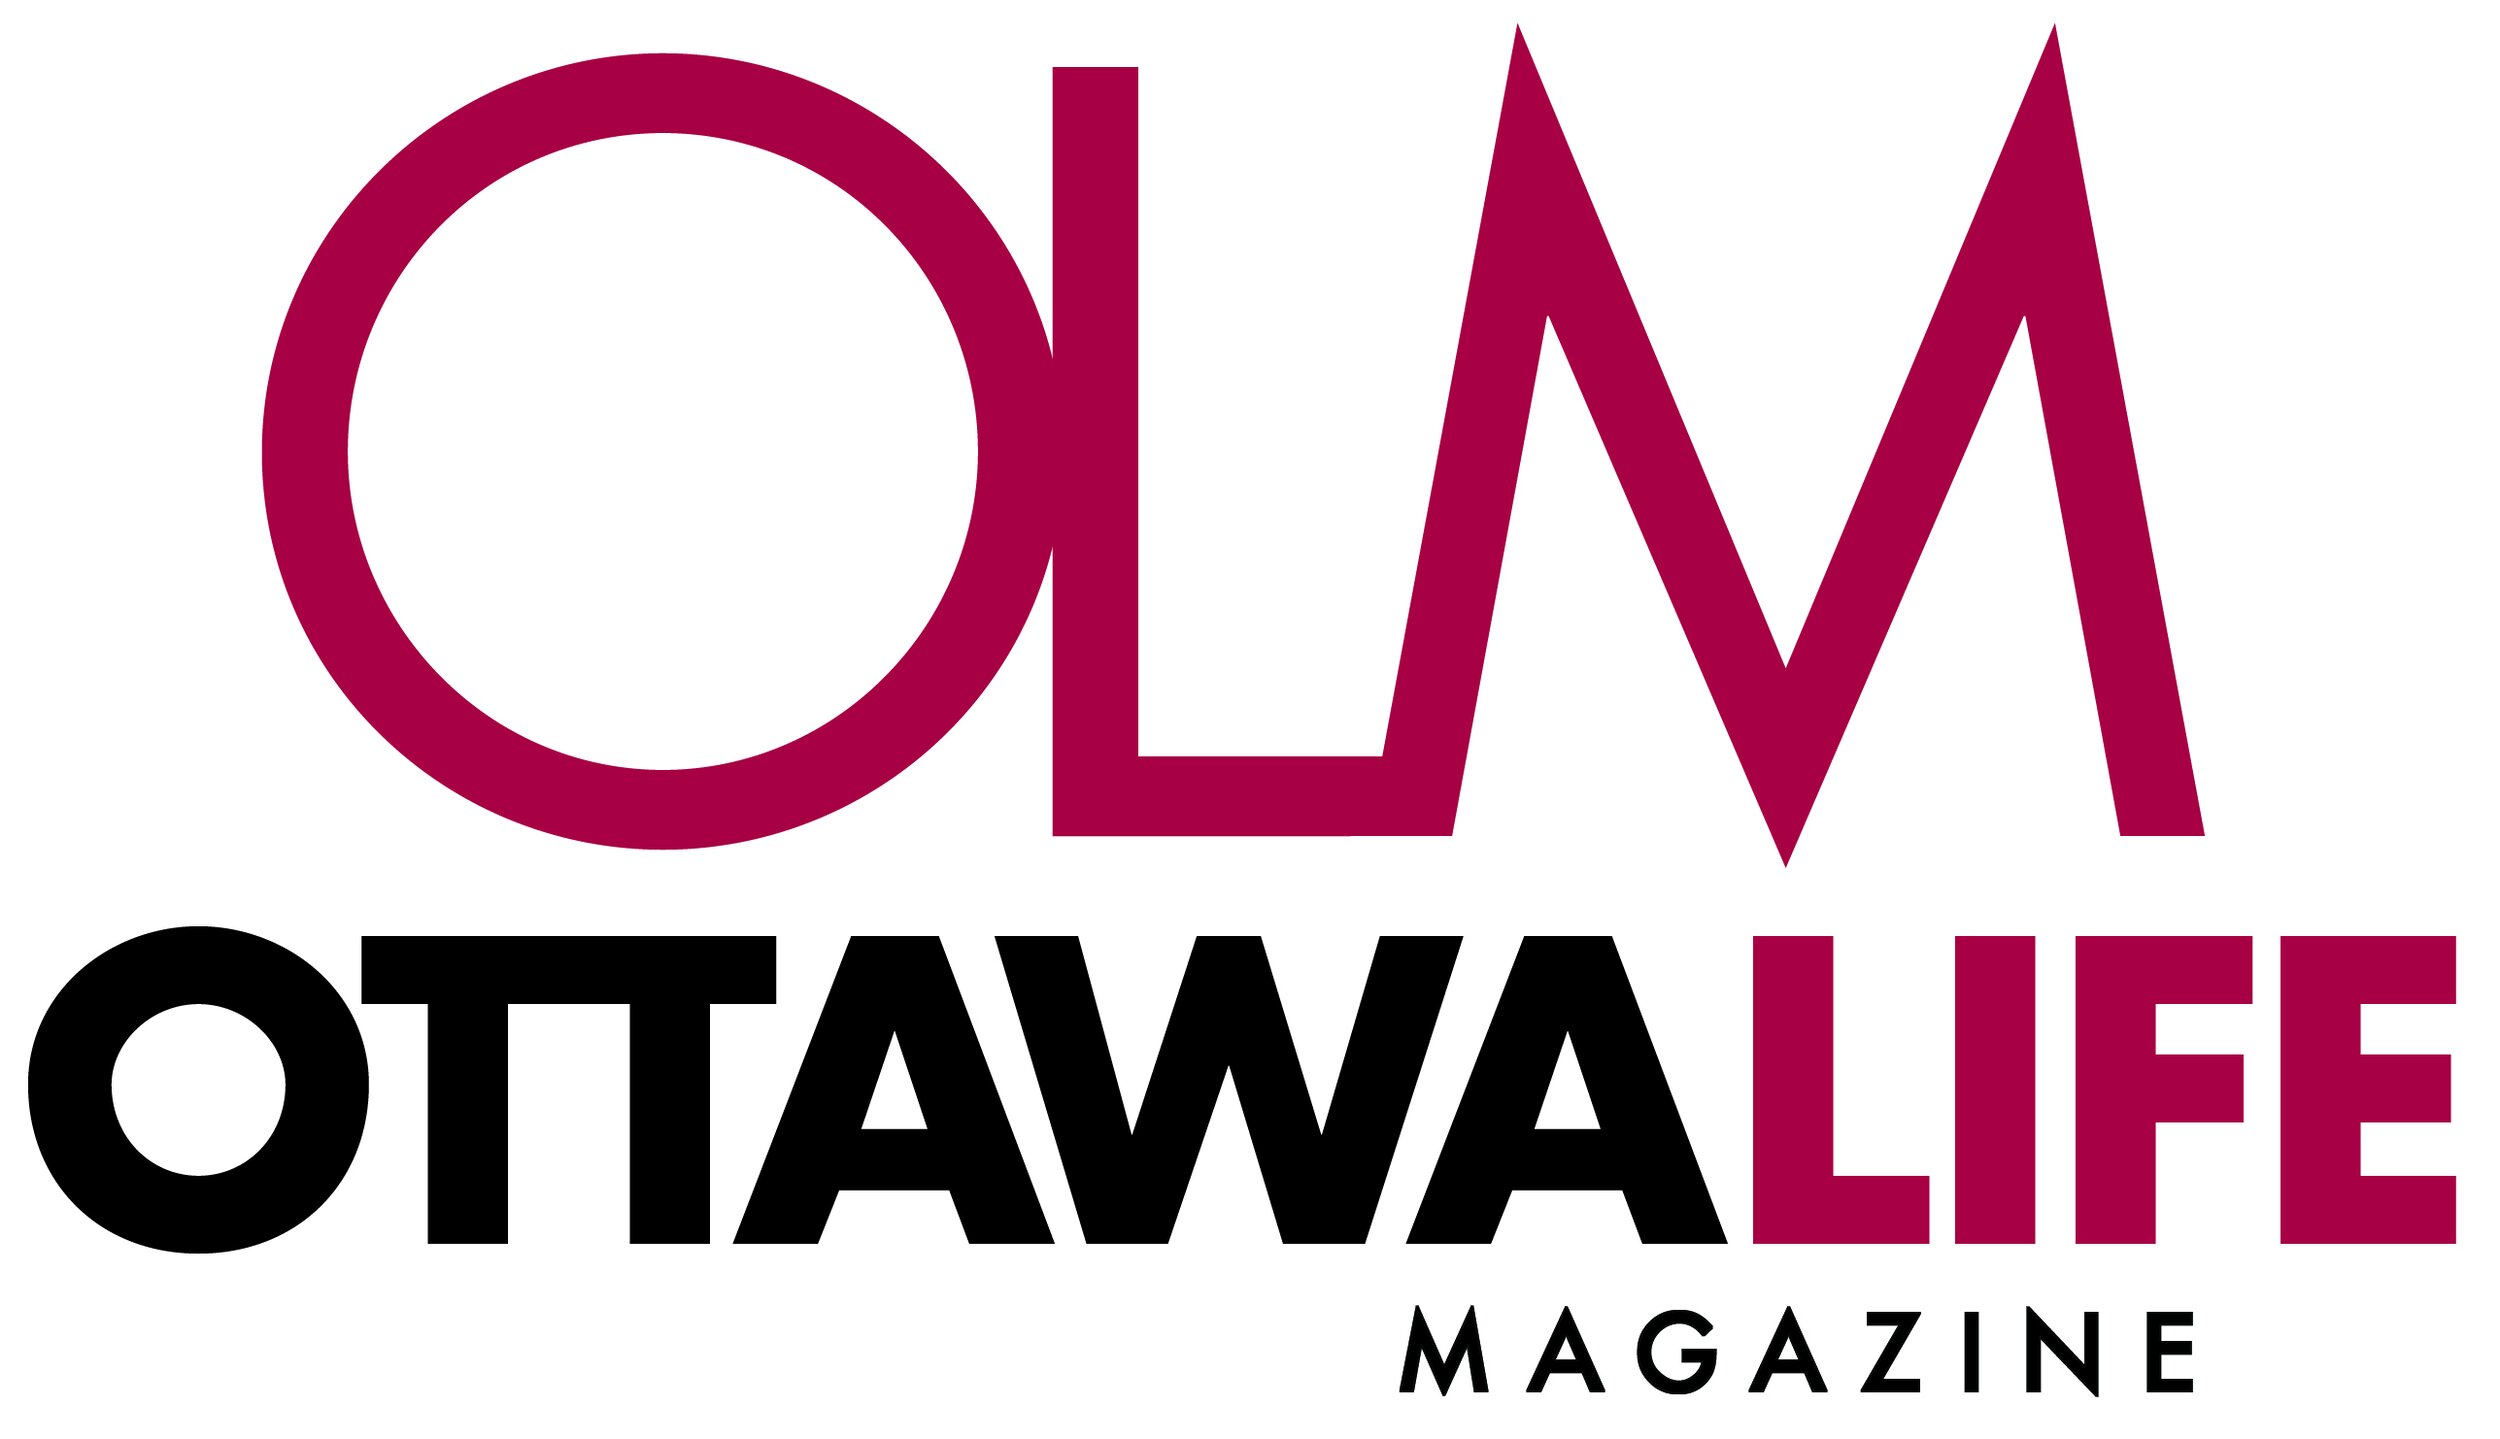 Ottawa Life Magazine  logo pdf 2019.jpg